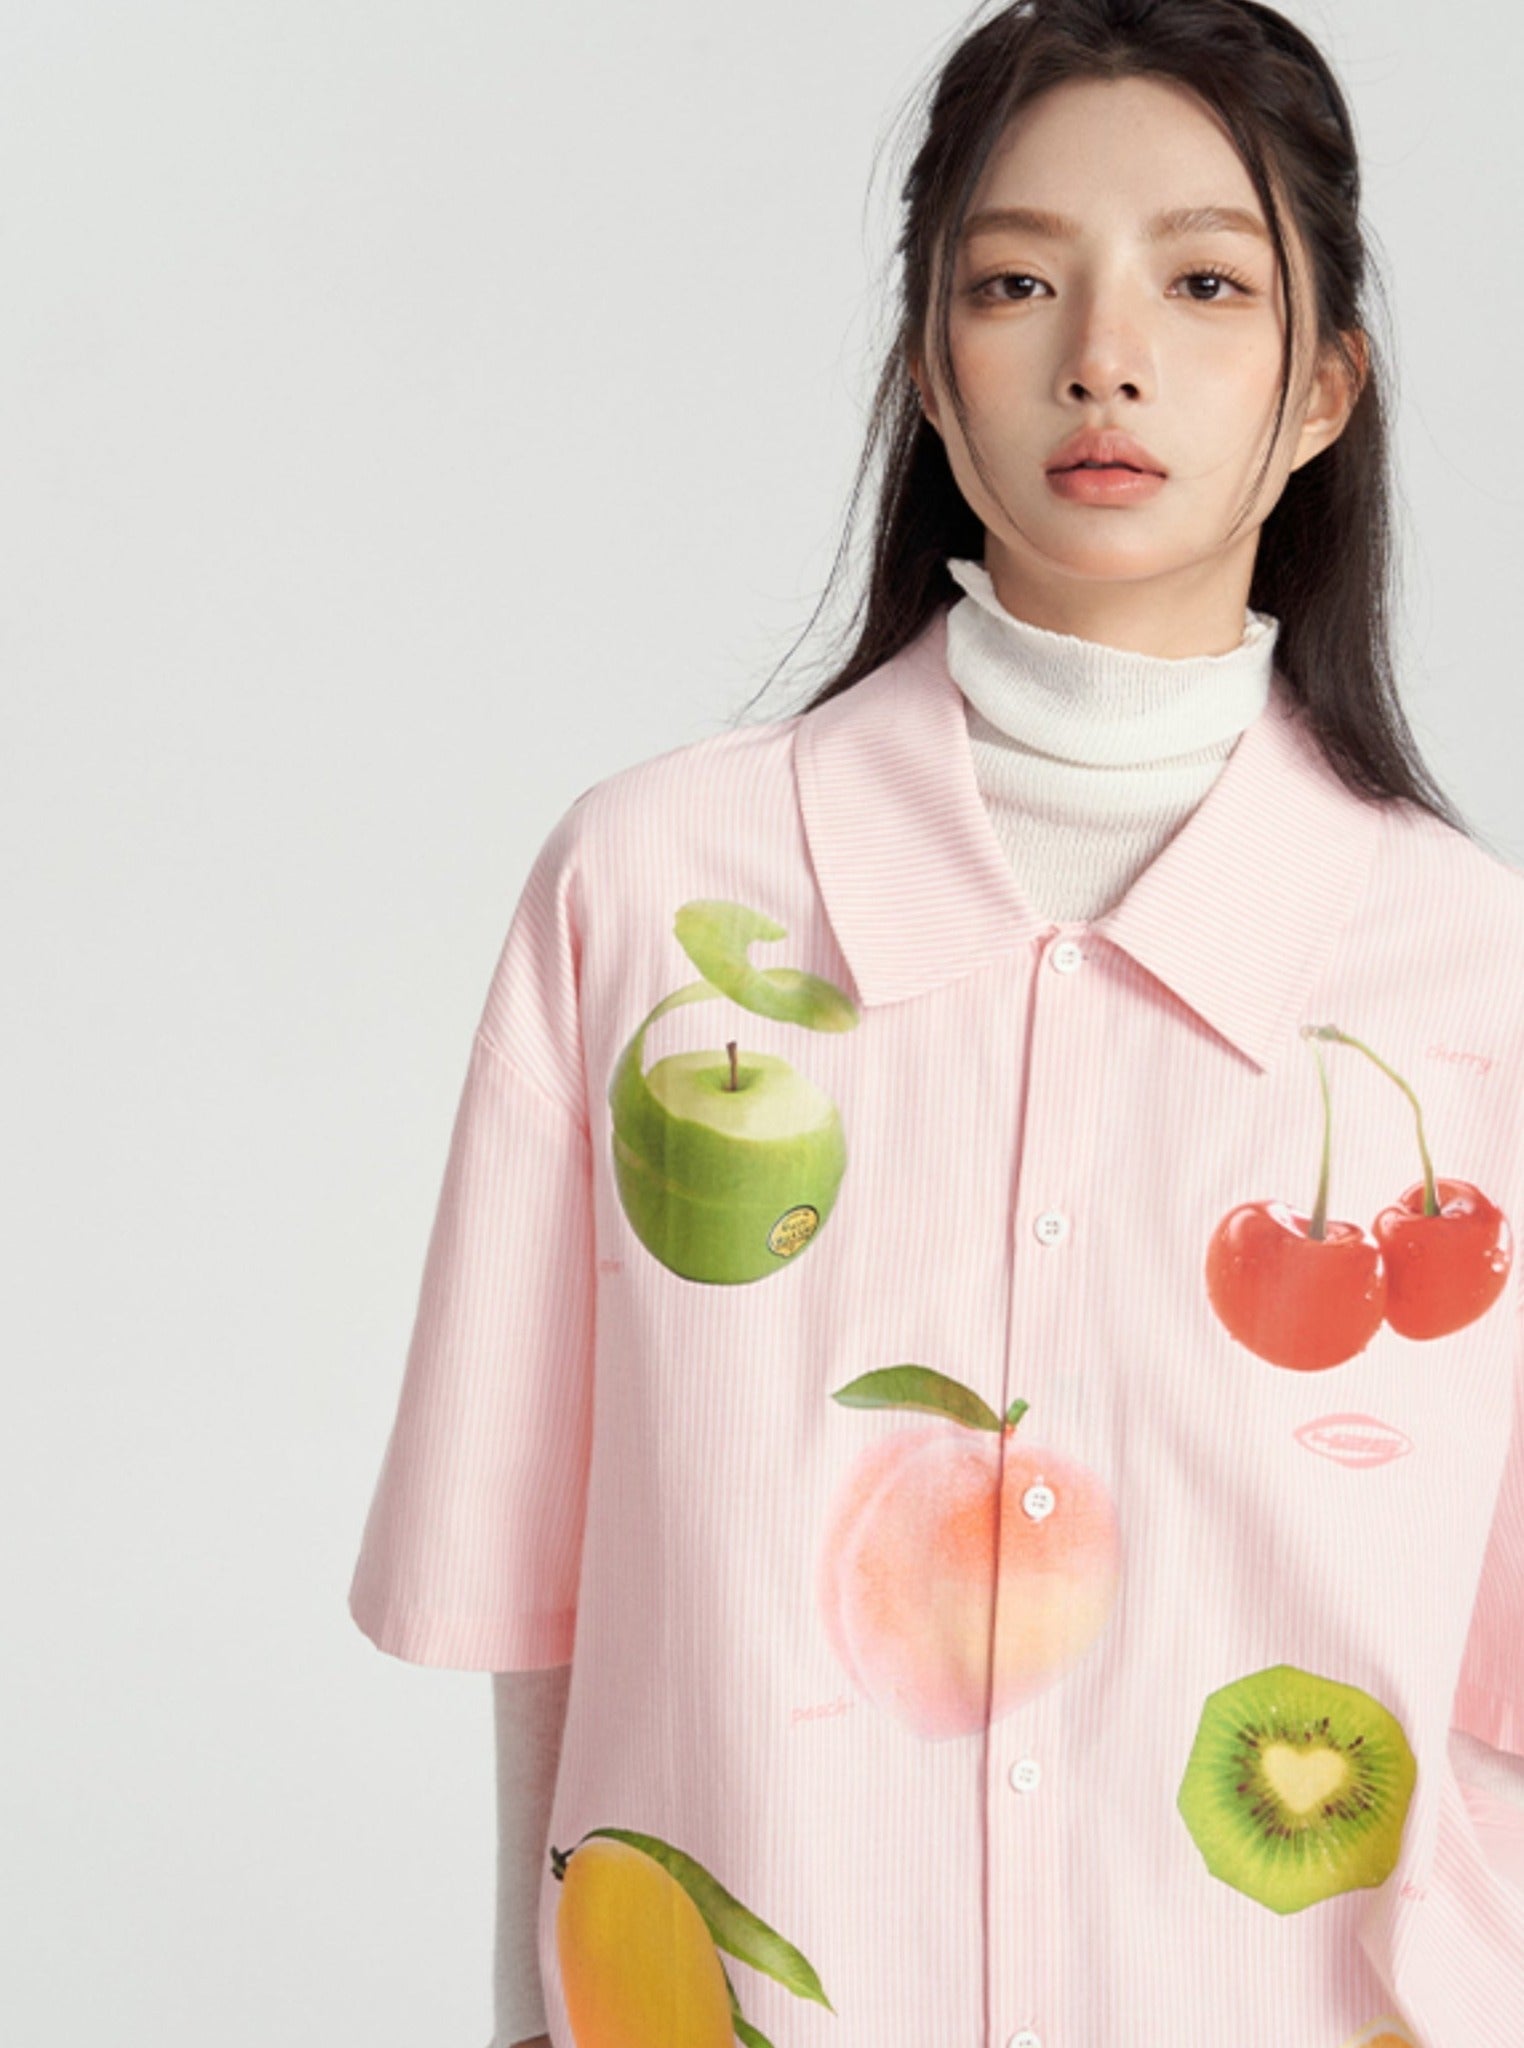 Fun Vertical Fruit Stripe Shirt - chiclara